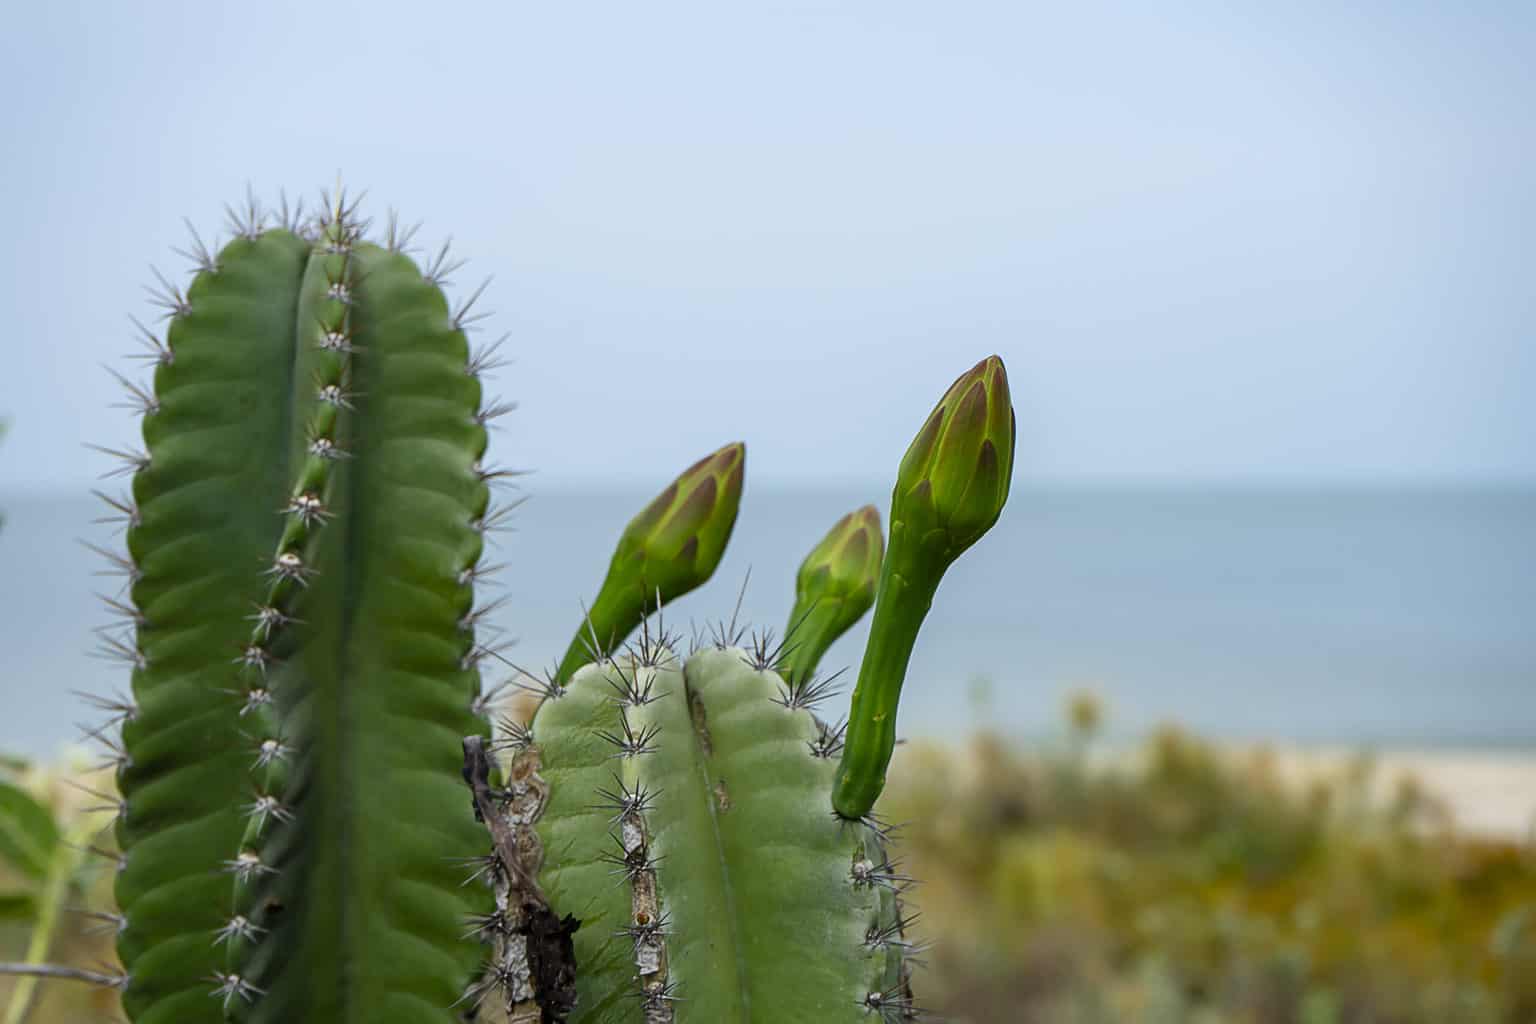 Peruvian Cactus